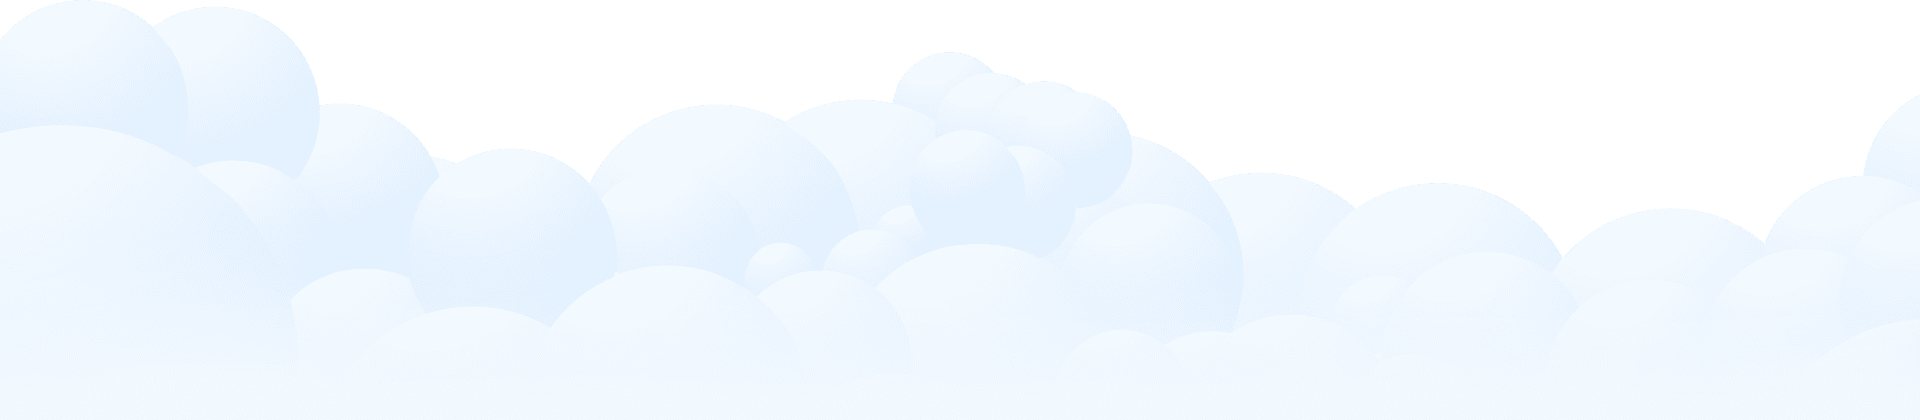 Clouds-01 (1)